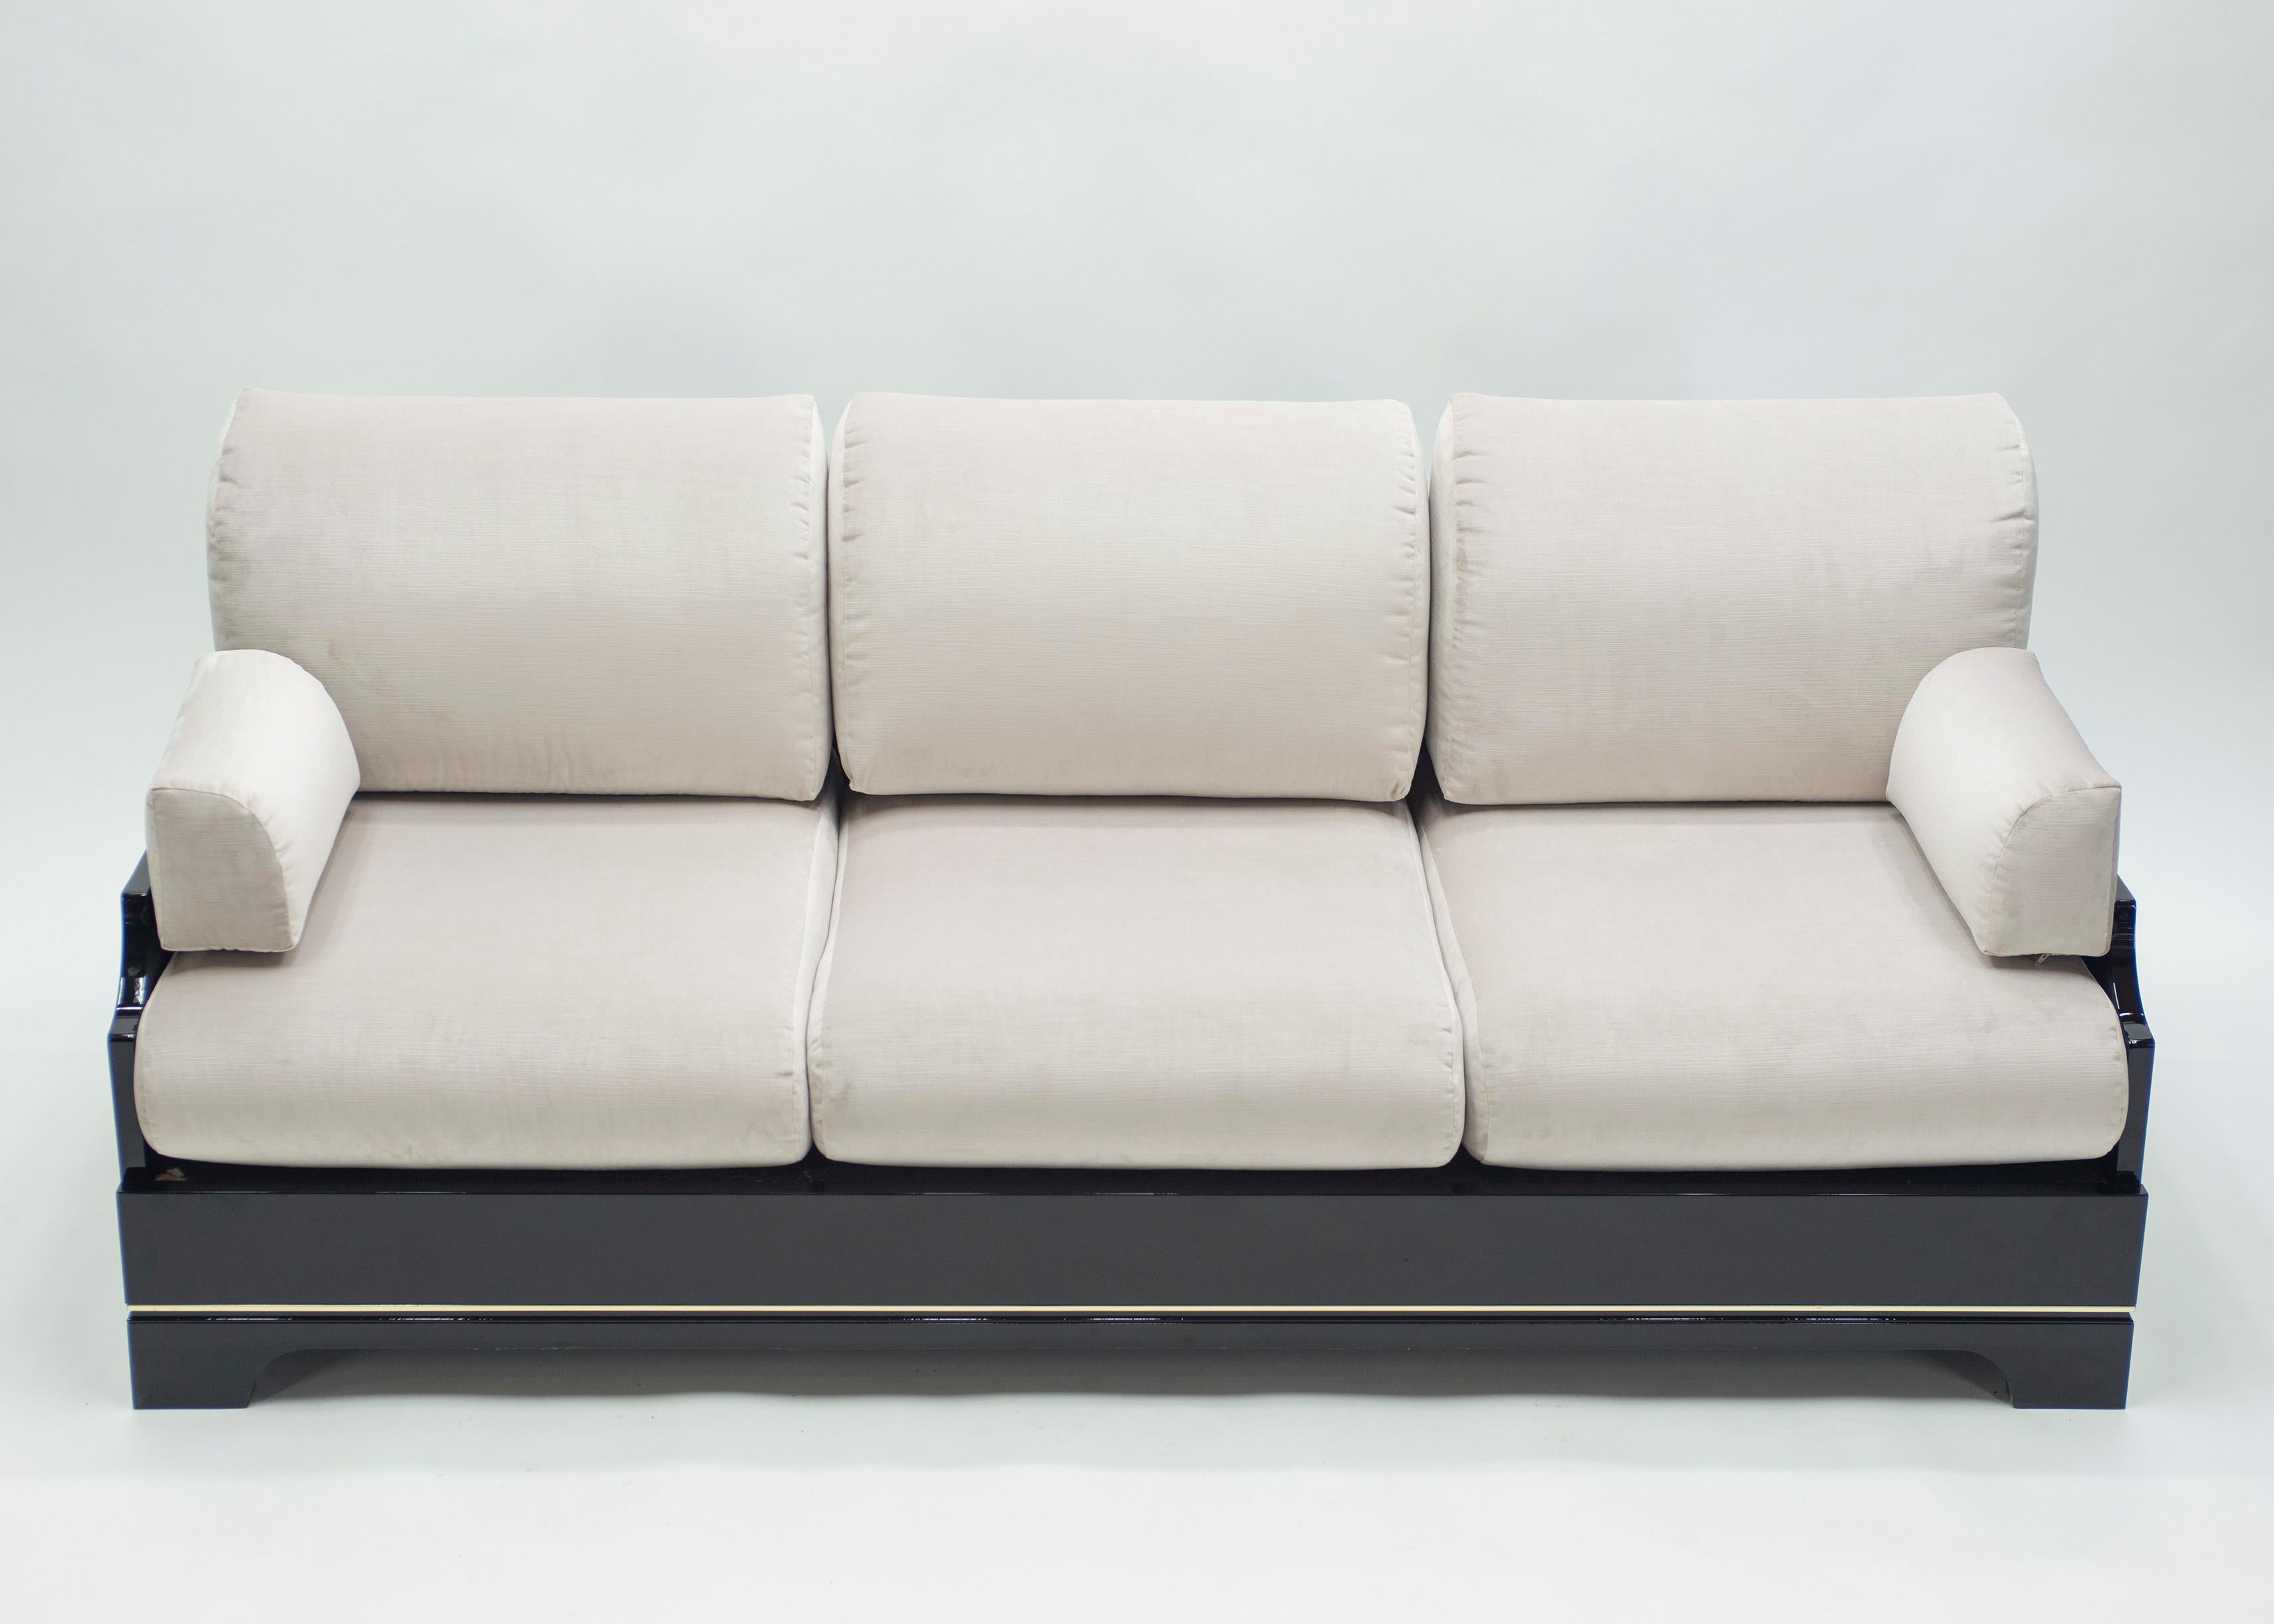 Dieses von Romeo Rega entworfene Sofa aus der Mid-Century-Moderne der italienischen Riviera strotzt nur so vor Nostalgie. Mit seinem tadellosen Design, den perfekten Proportionen und den hochwertigen italienischen Materialien aus schwarzem Lack und